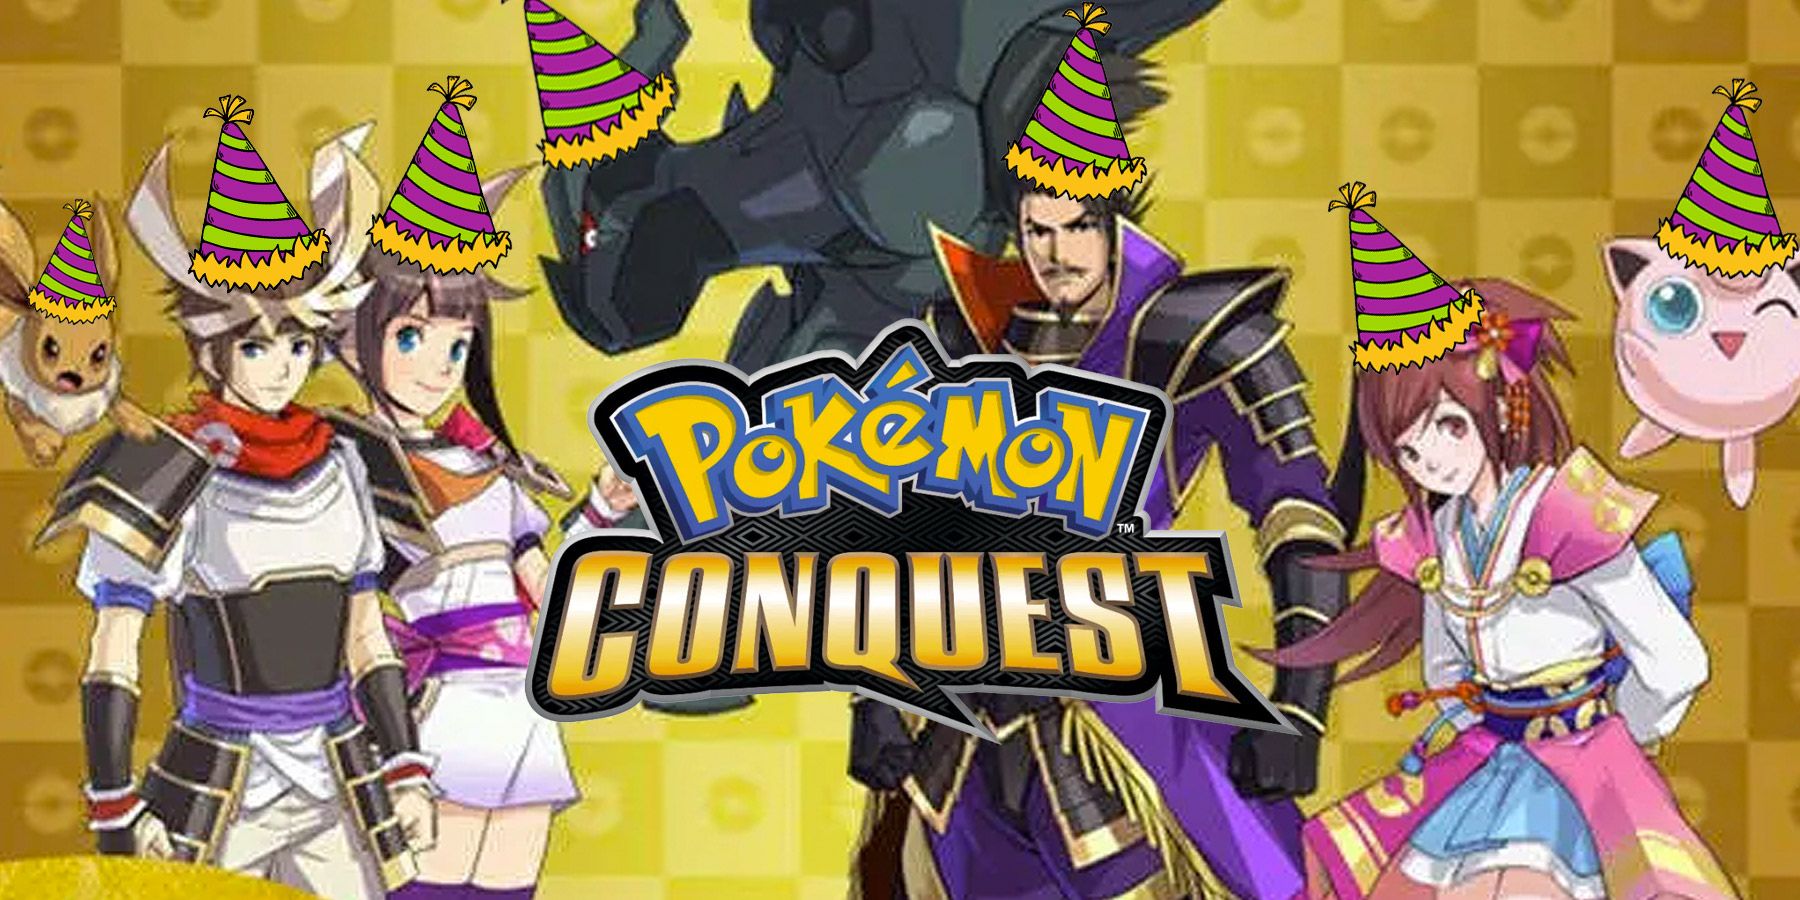 Pokemon Conquest 10th Anniversary